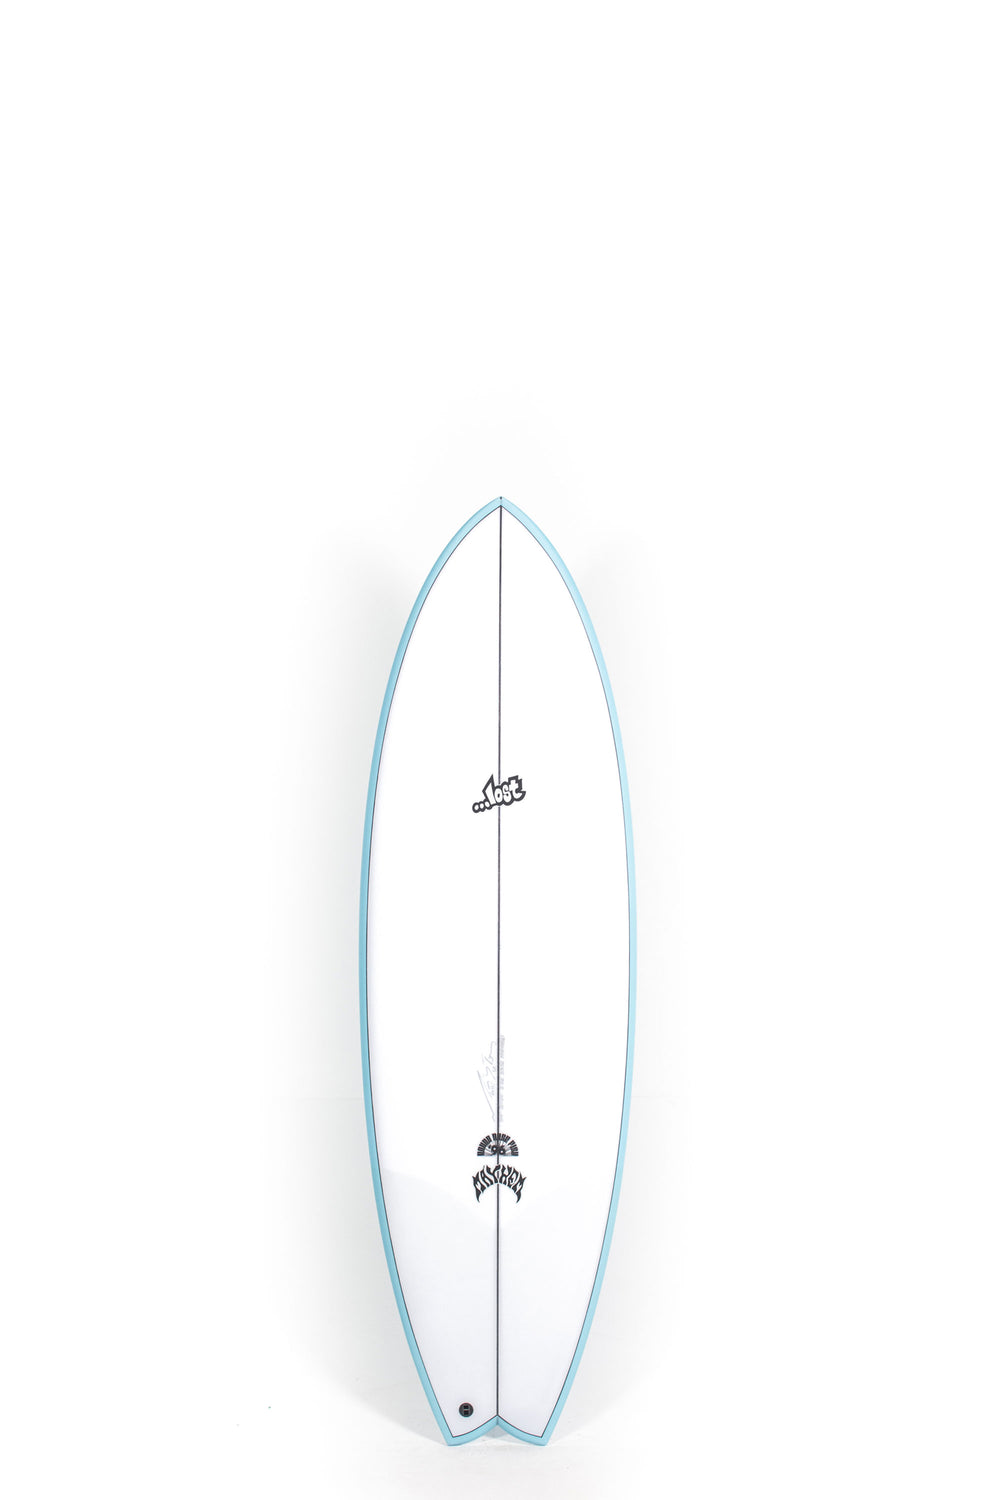 Pukas-Surf-Shop-Lost-Surfboards-RNF-96-Matt-Biolos-5_9